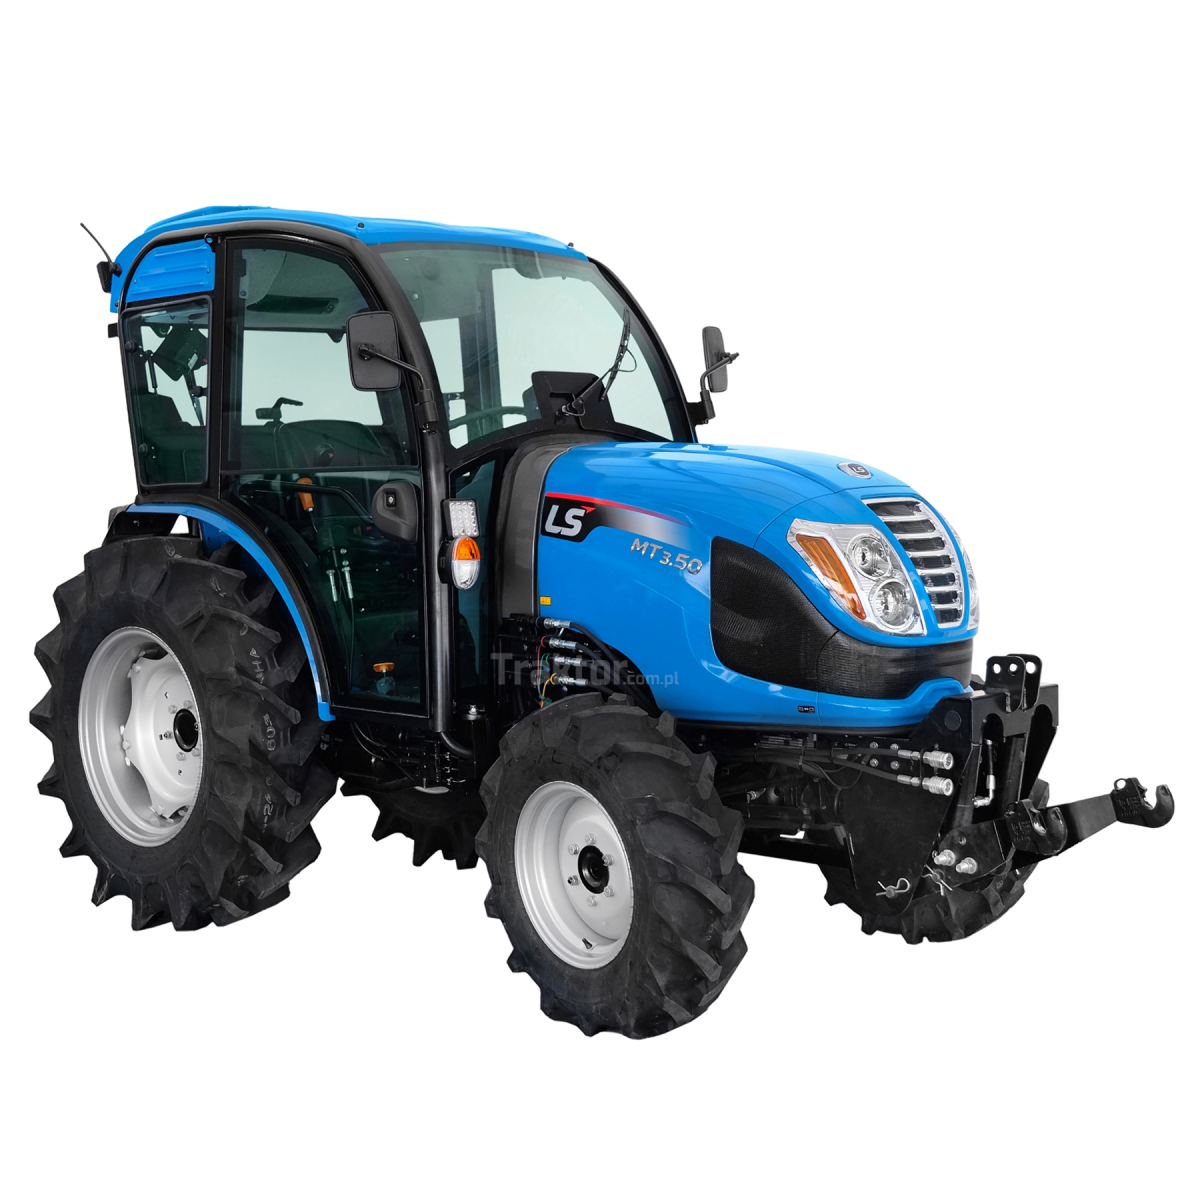 LS Traktor MT3.50 MEC 4x4 - 47 PS / Kabine mit Klimaanlage + Frontkraftheber für den Premium 4FARMER Traktor